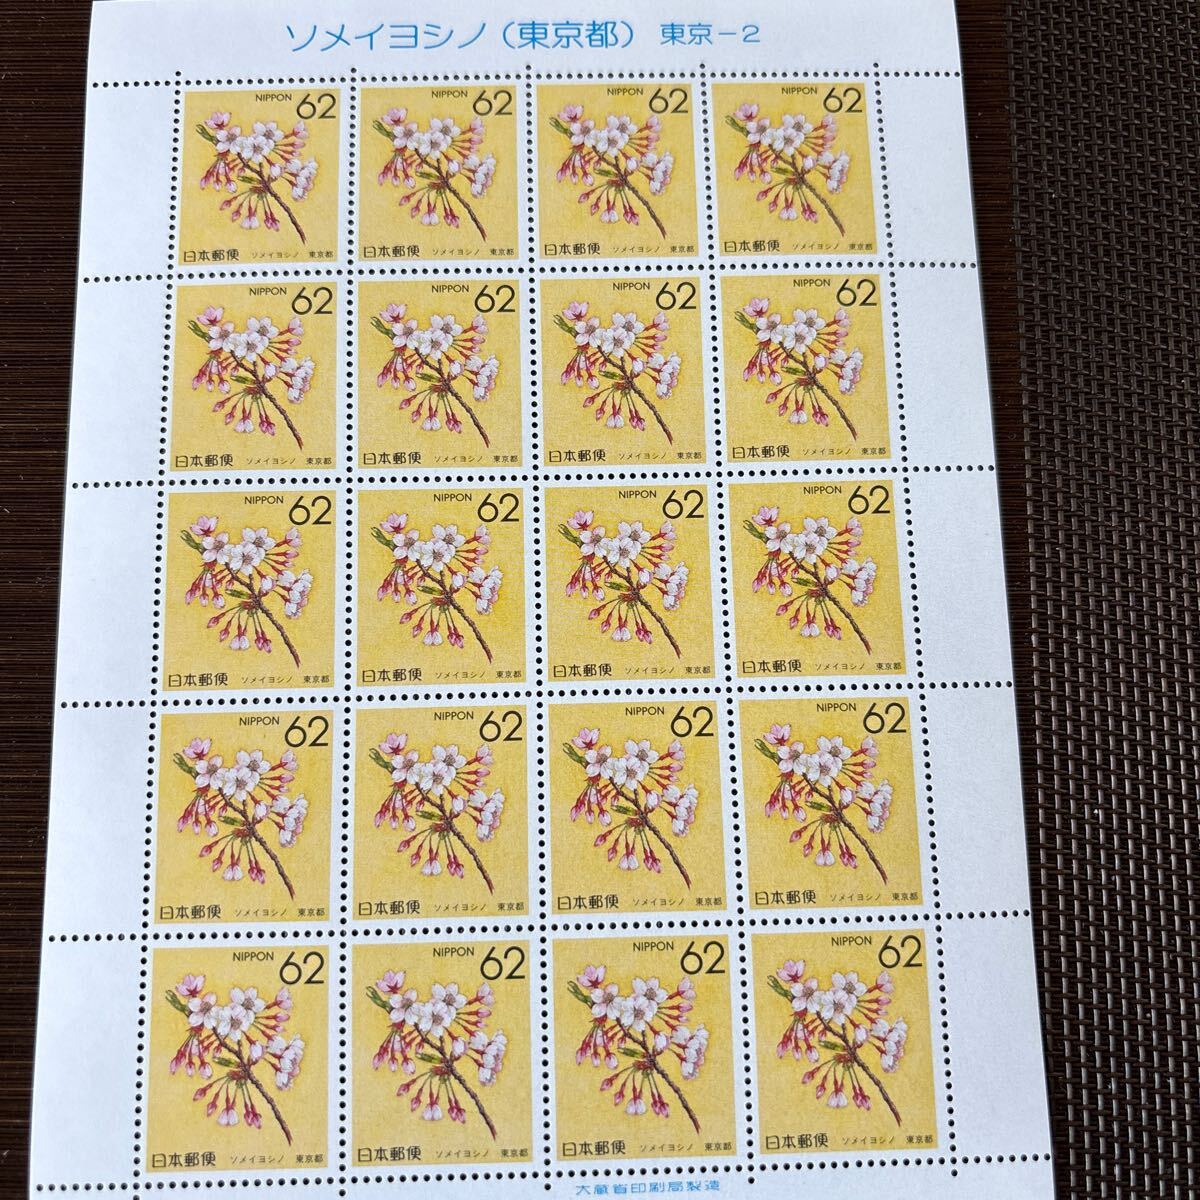 288) Furusato Stamp Tokyo 1~5 62 jpy stamp 20 sheets 4 seat 41 jpy stamp 20 sheets 1 seat 